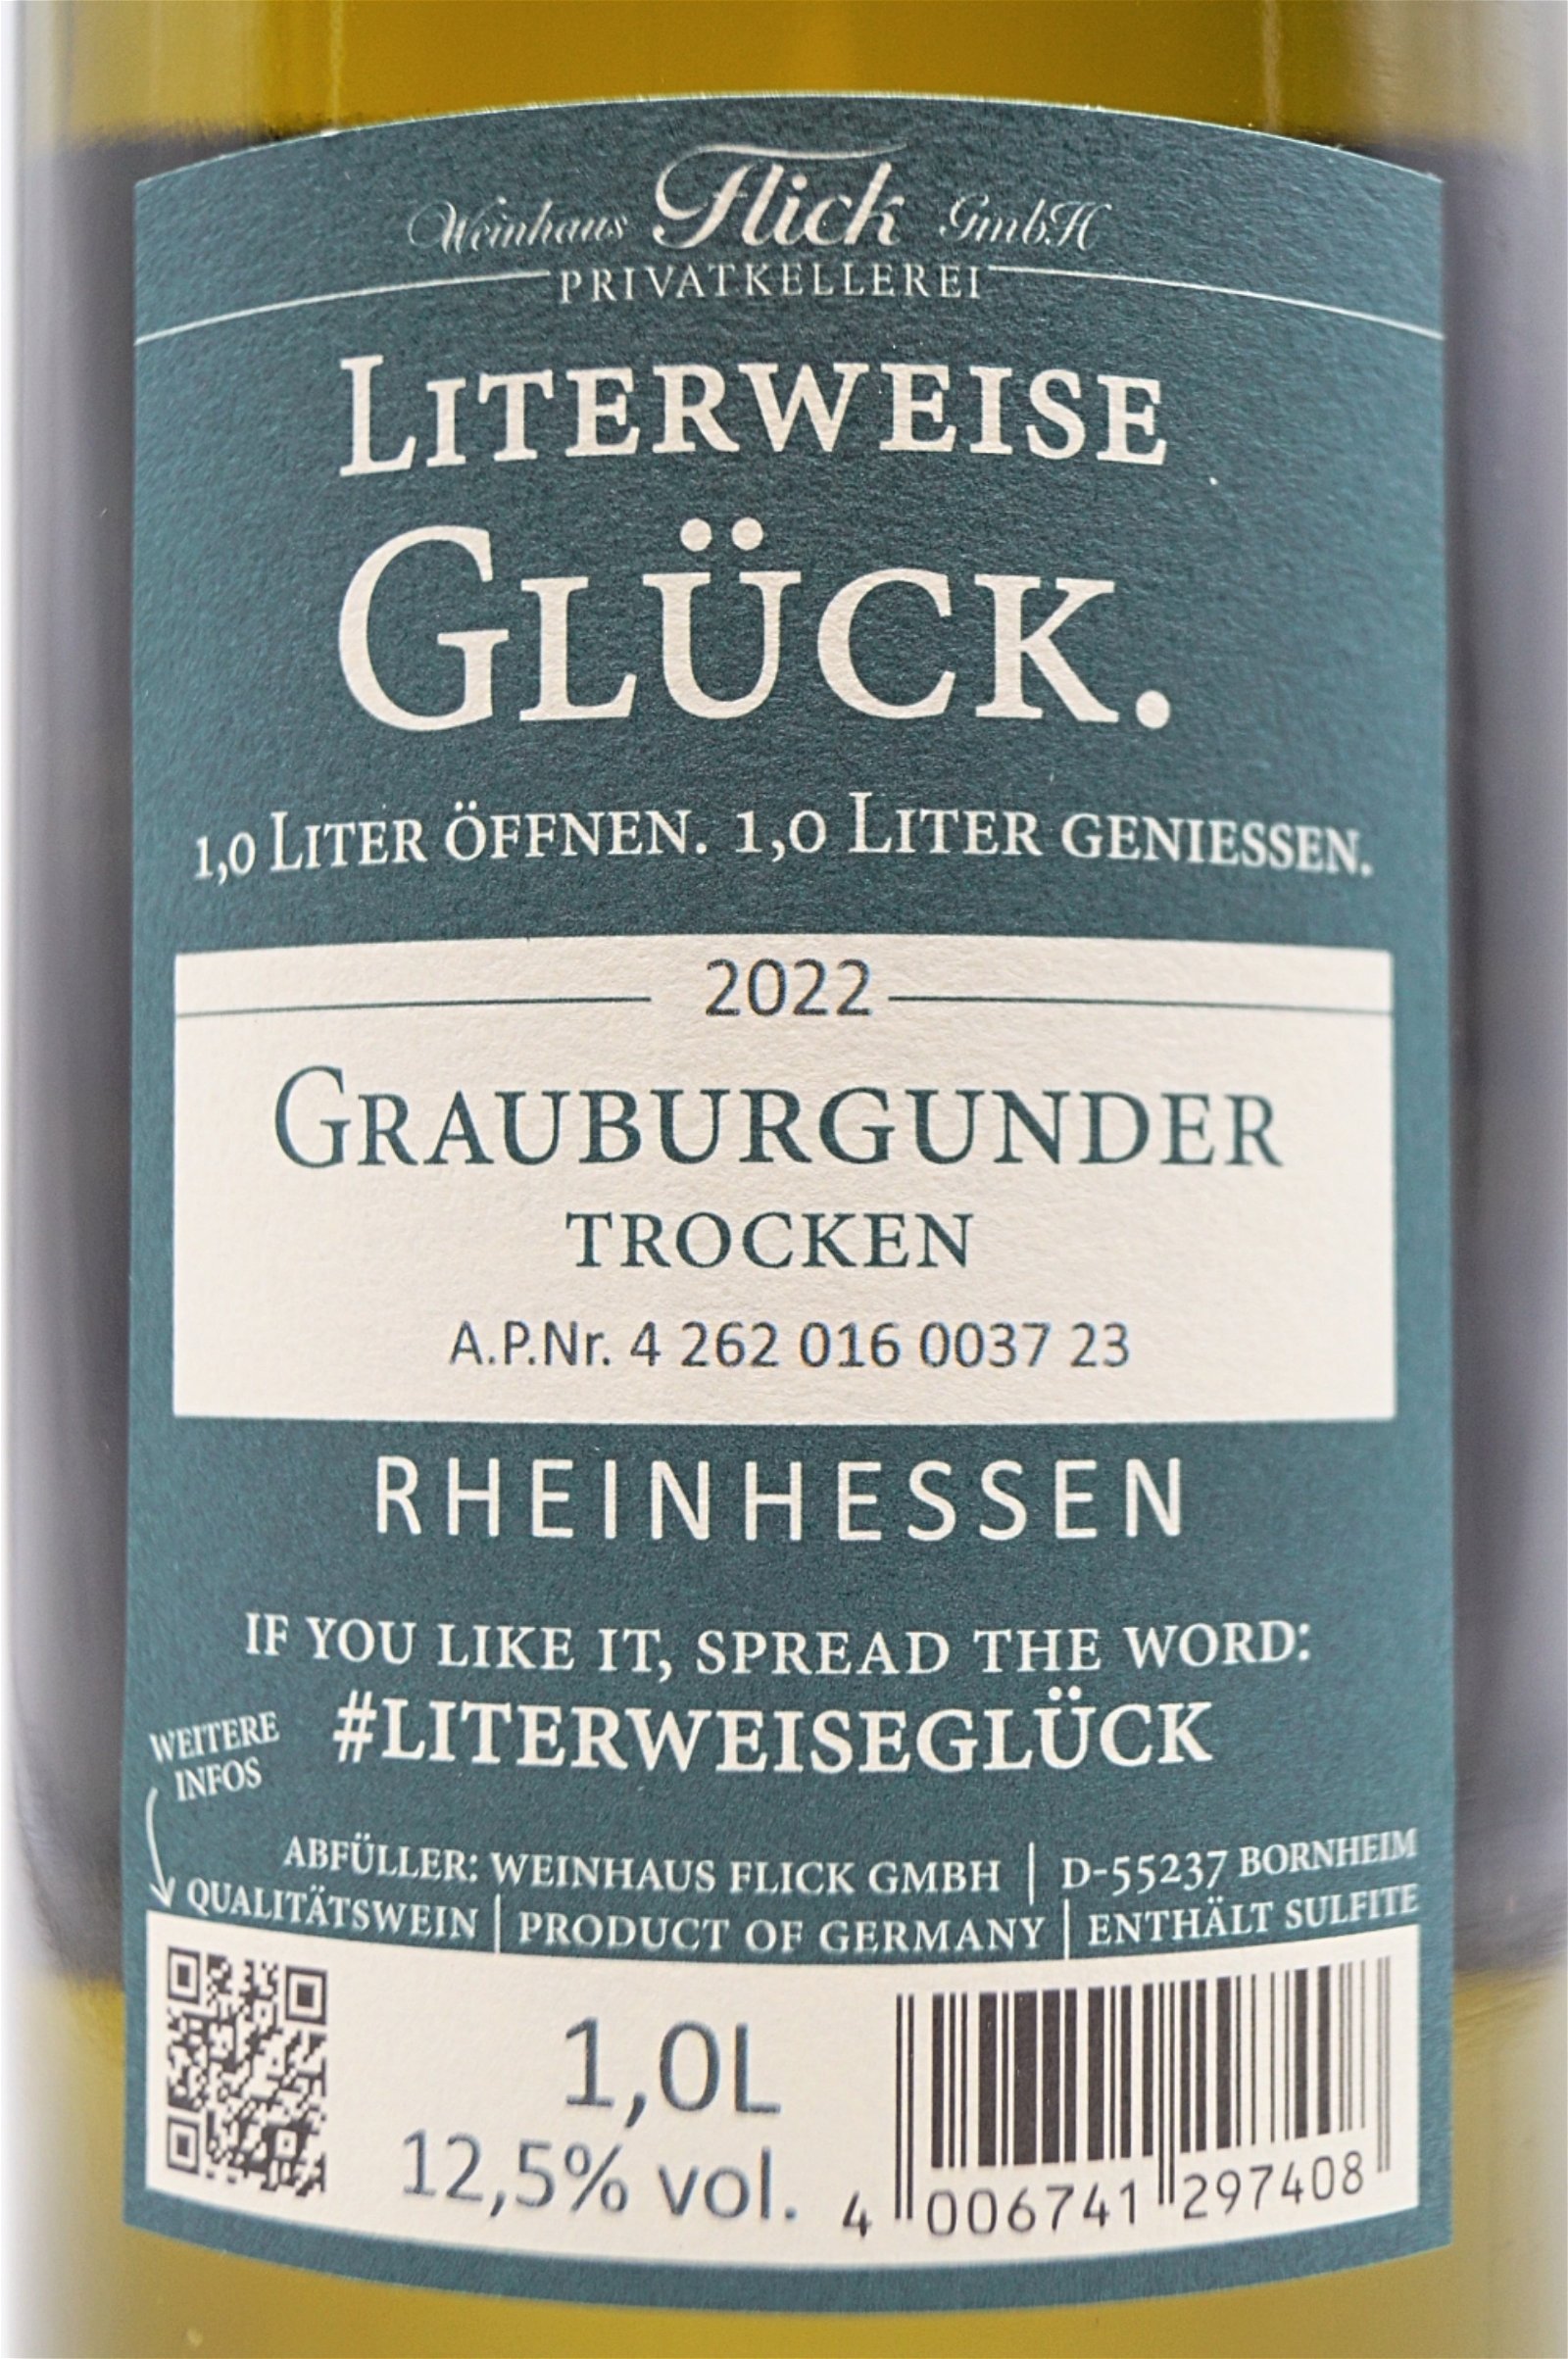 Weinhaus Flick GRAUER BURGUNDER Literweise Glück